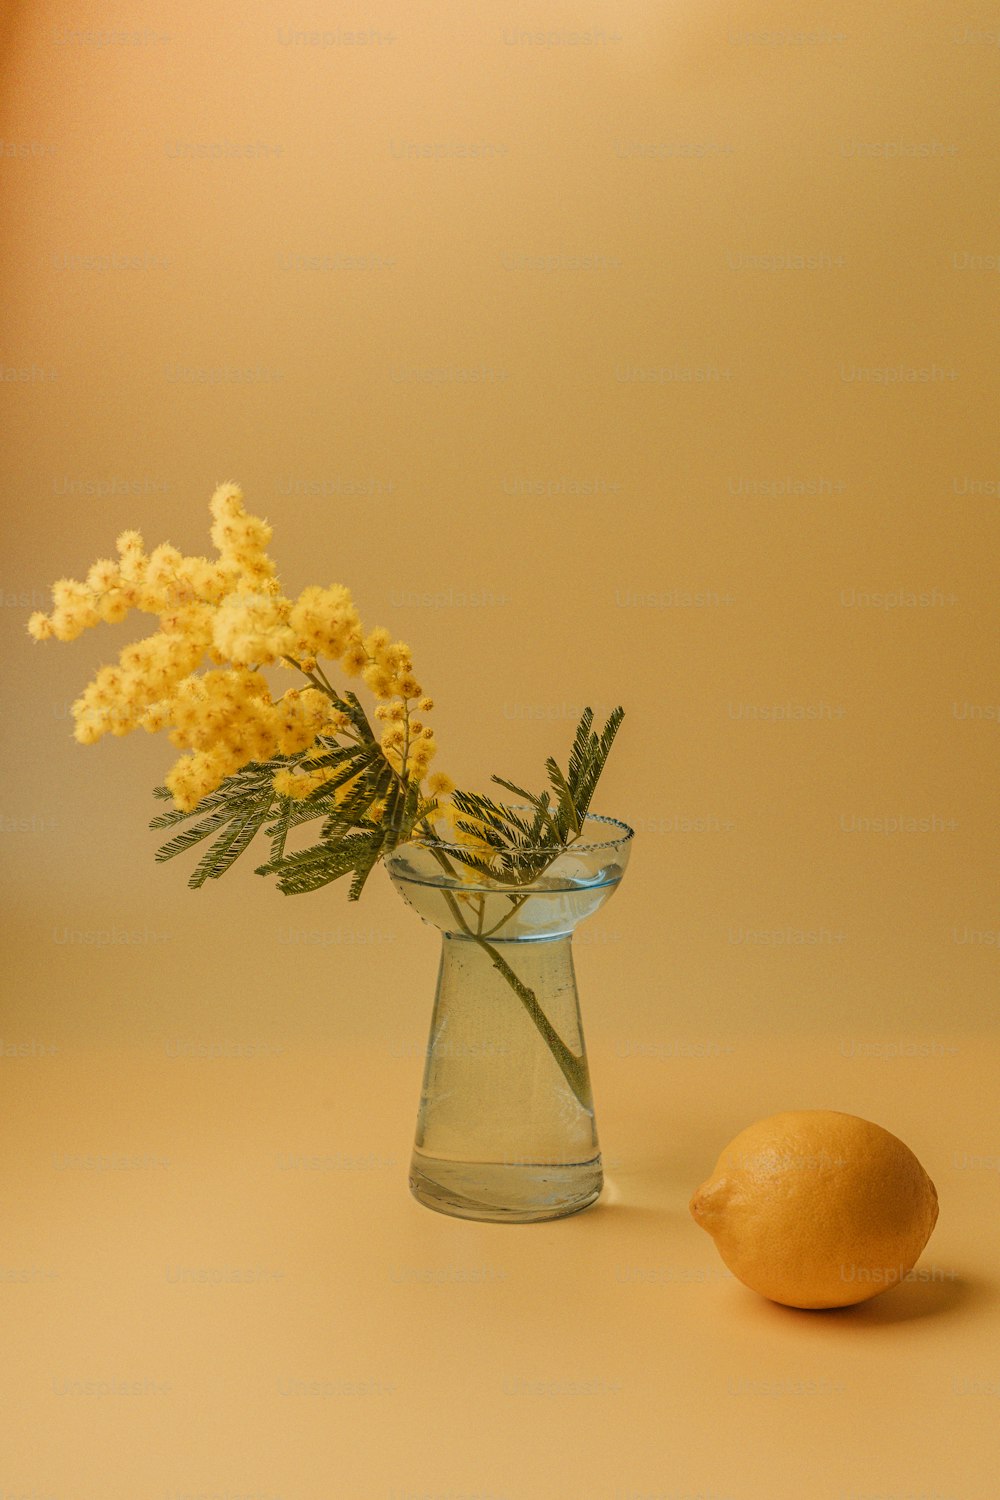 Un fiore giallo in un vaso di vetro accanto a un limone